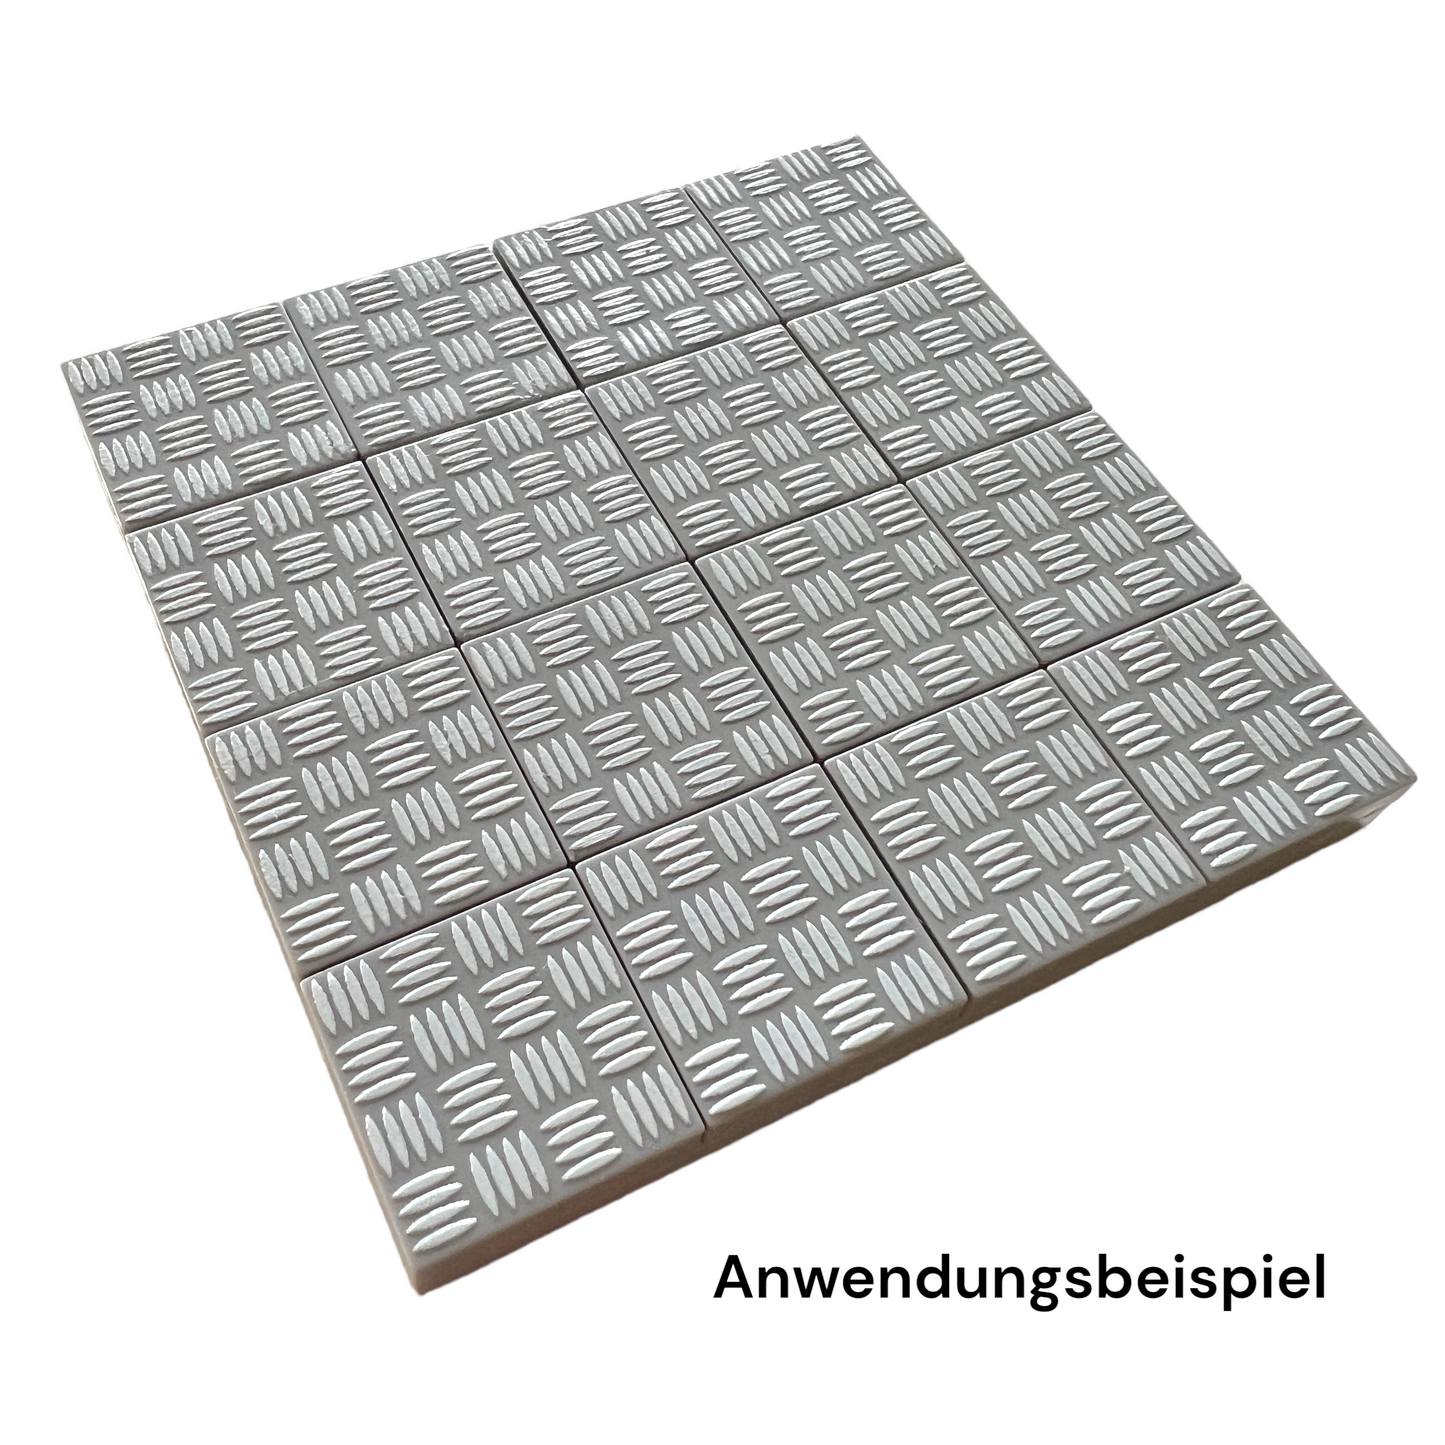 Tile 2x2 - Riffelblech-Muster Hellgrau